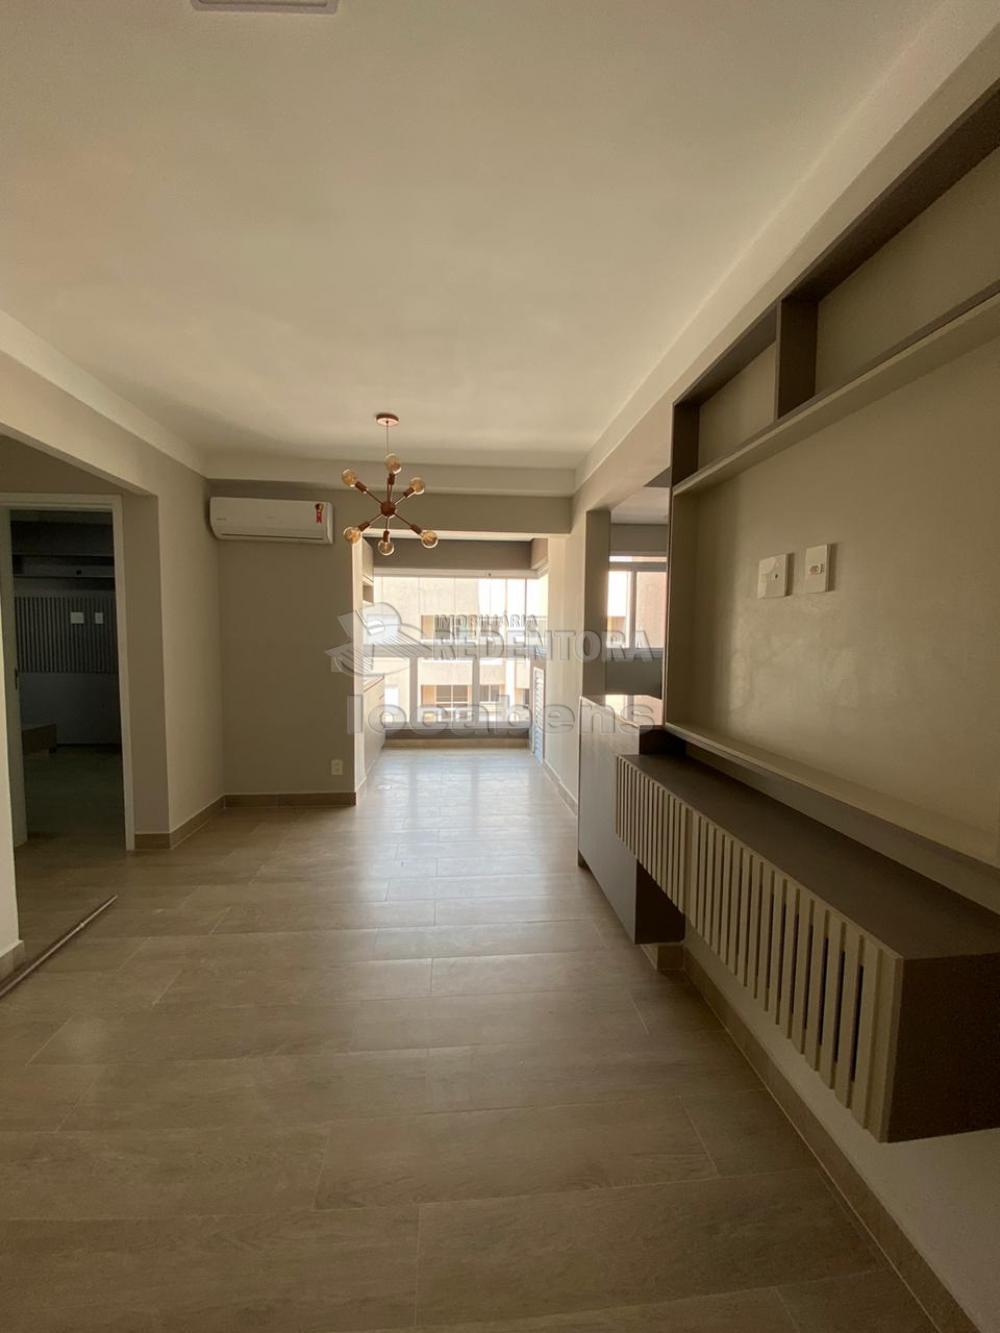 Alugar Apartamento / Cobertura em São José do Rio Preto R$ 2.300,00 - Foto 2